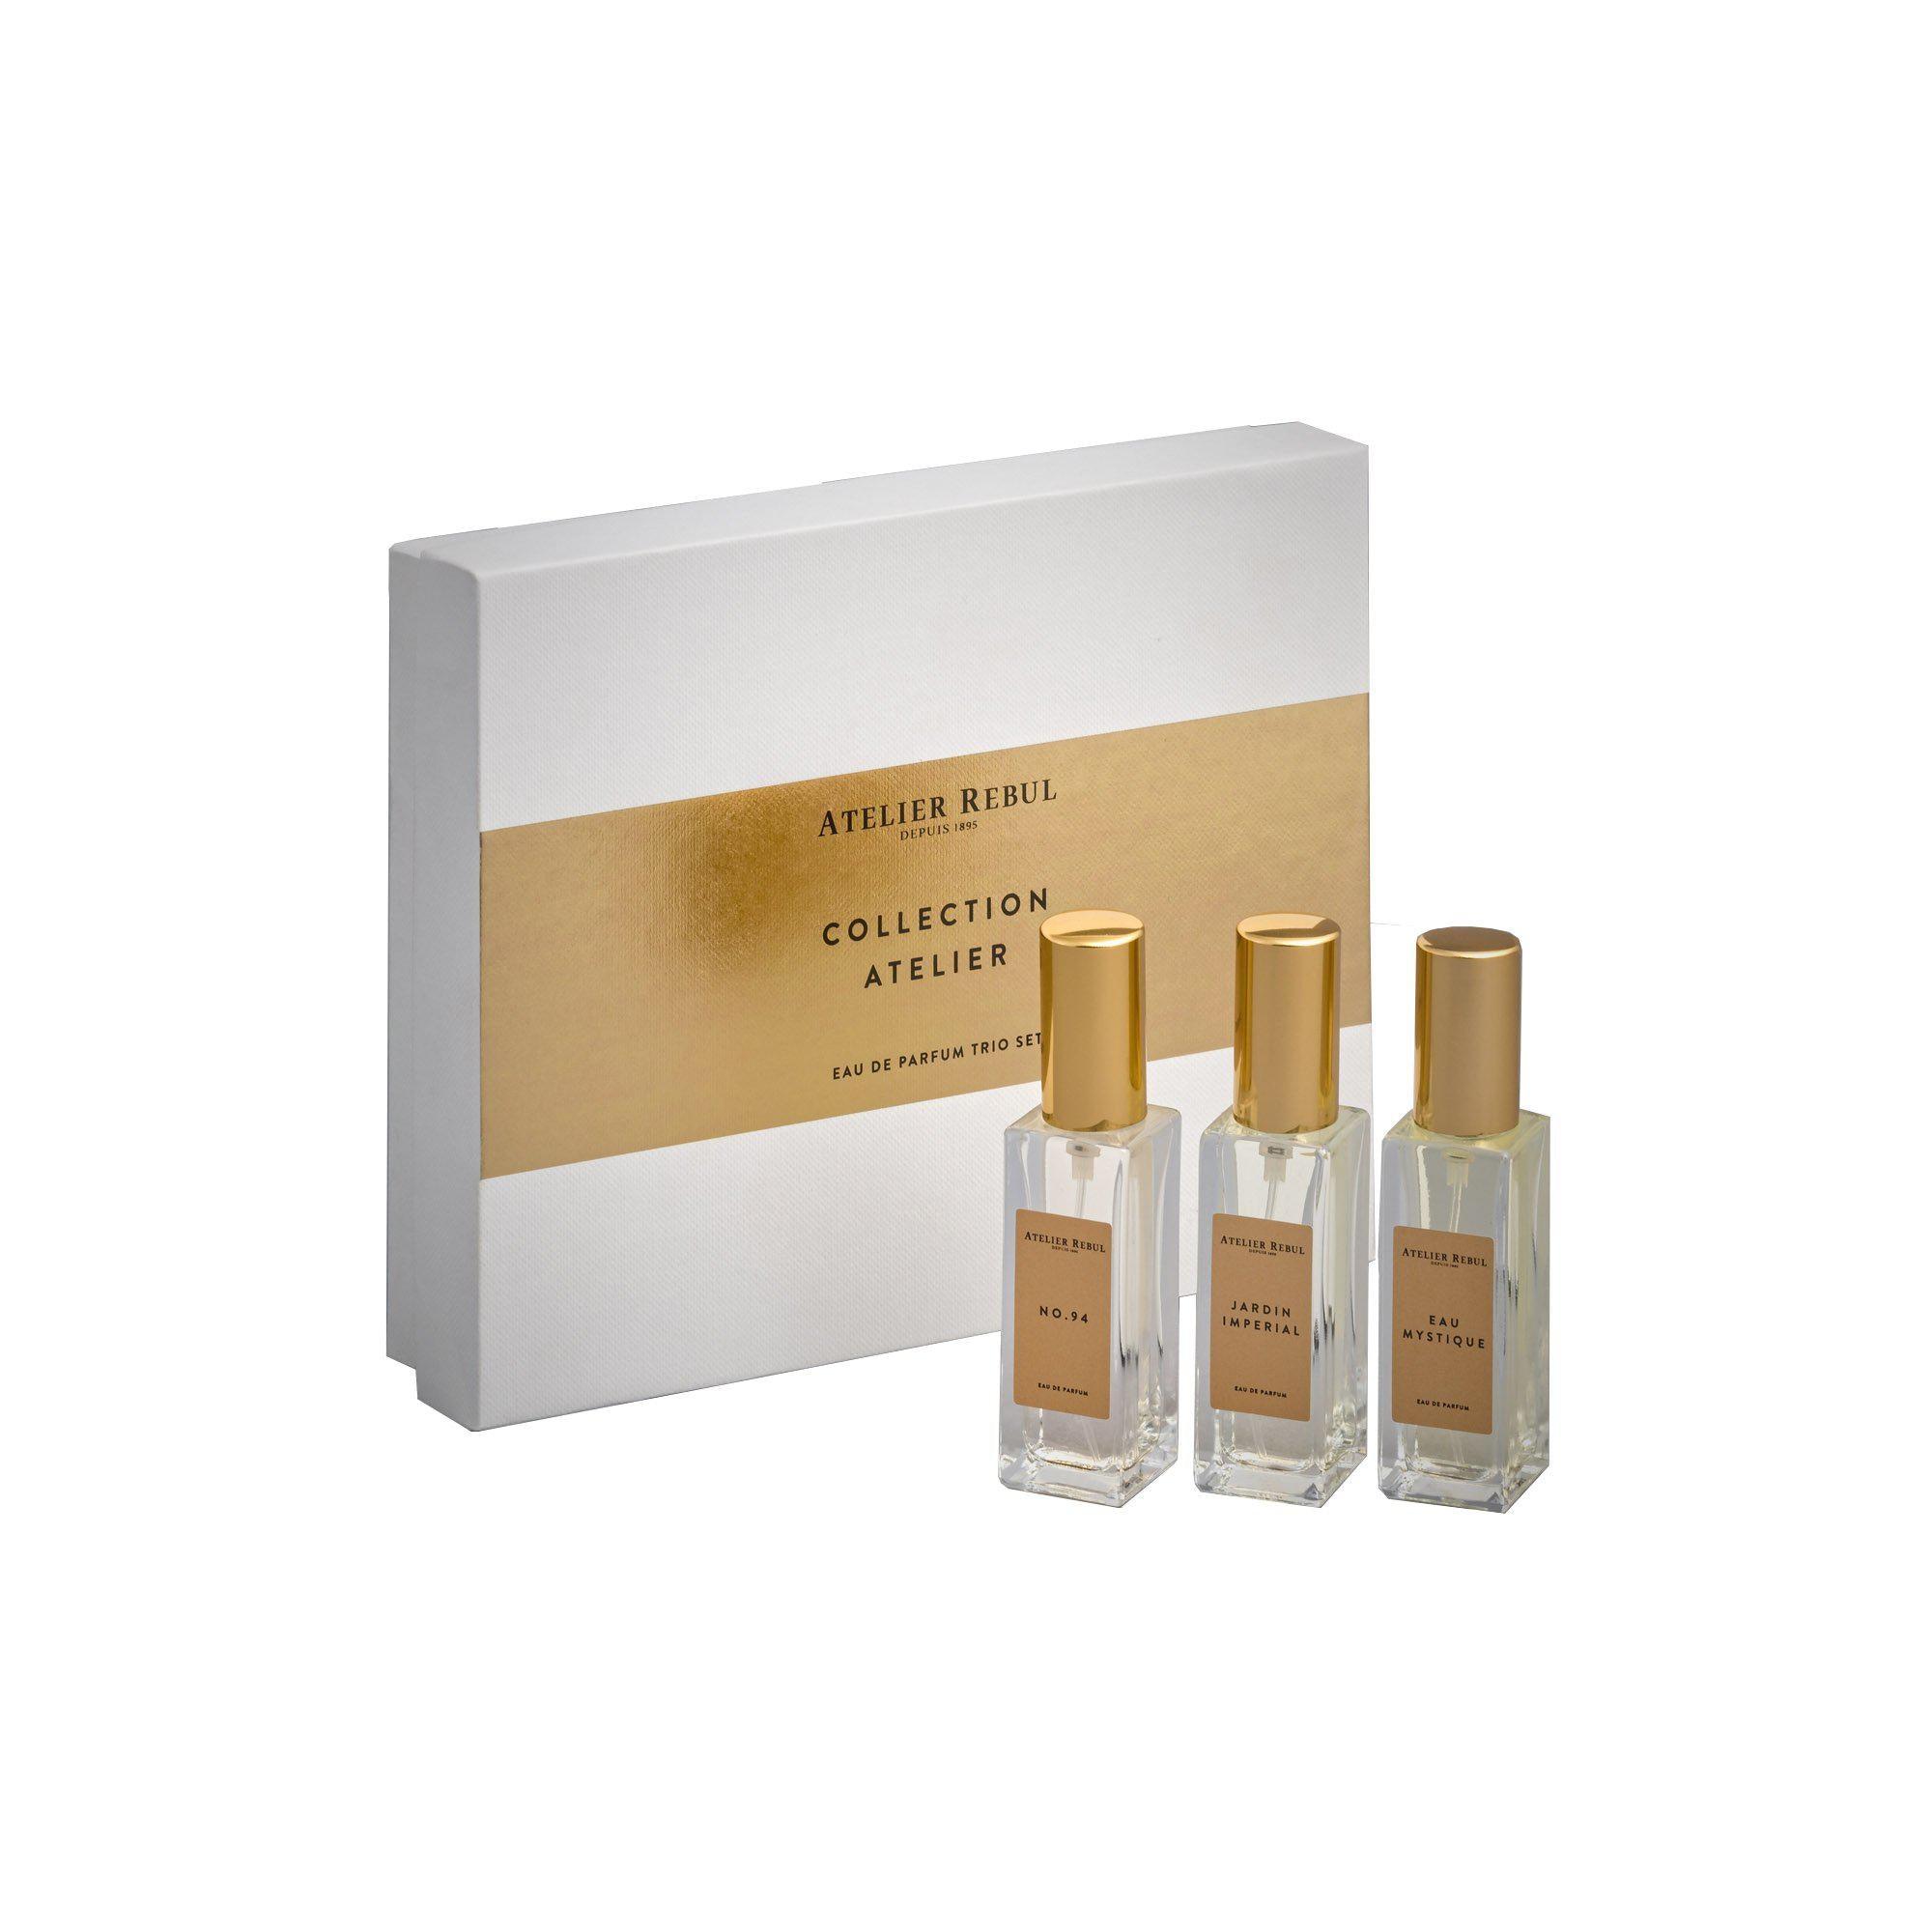 Collection Atelier Eau de Parfum Trio Giftset | Atelier Rebul Webshop